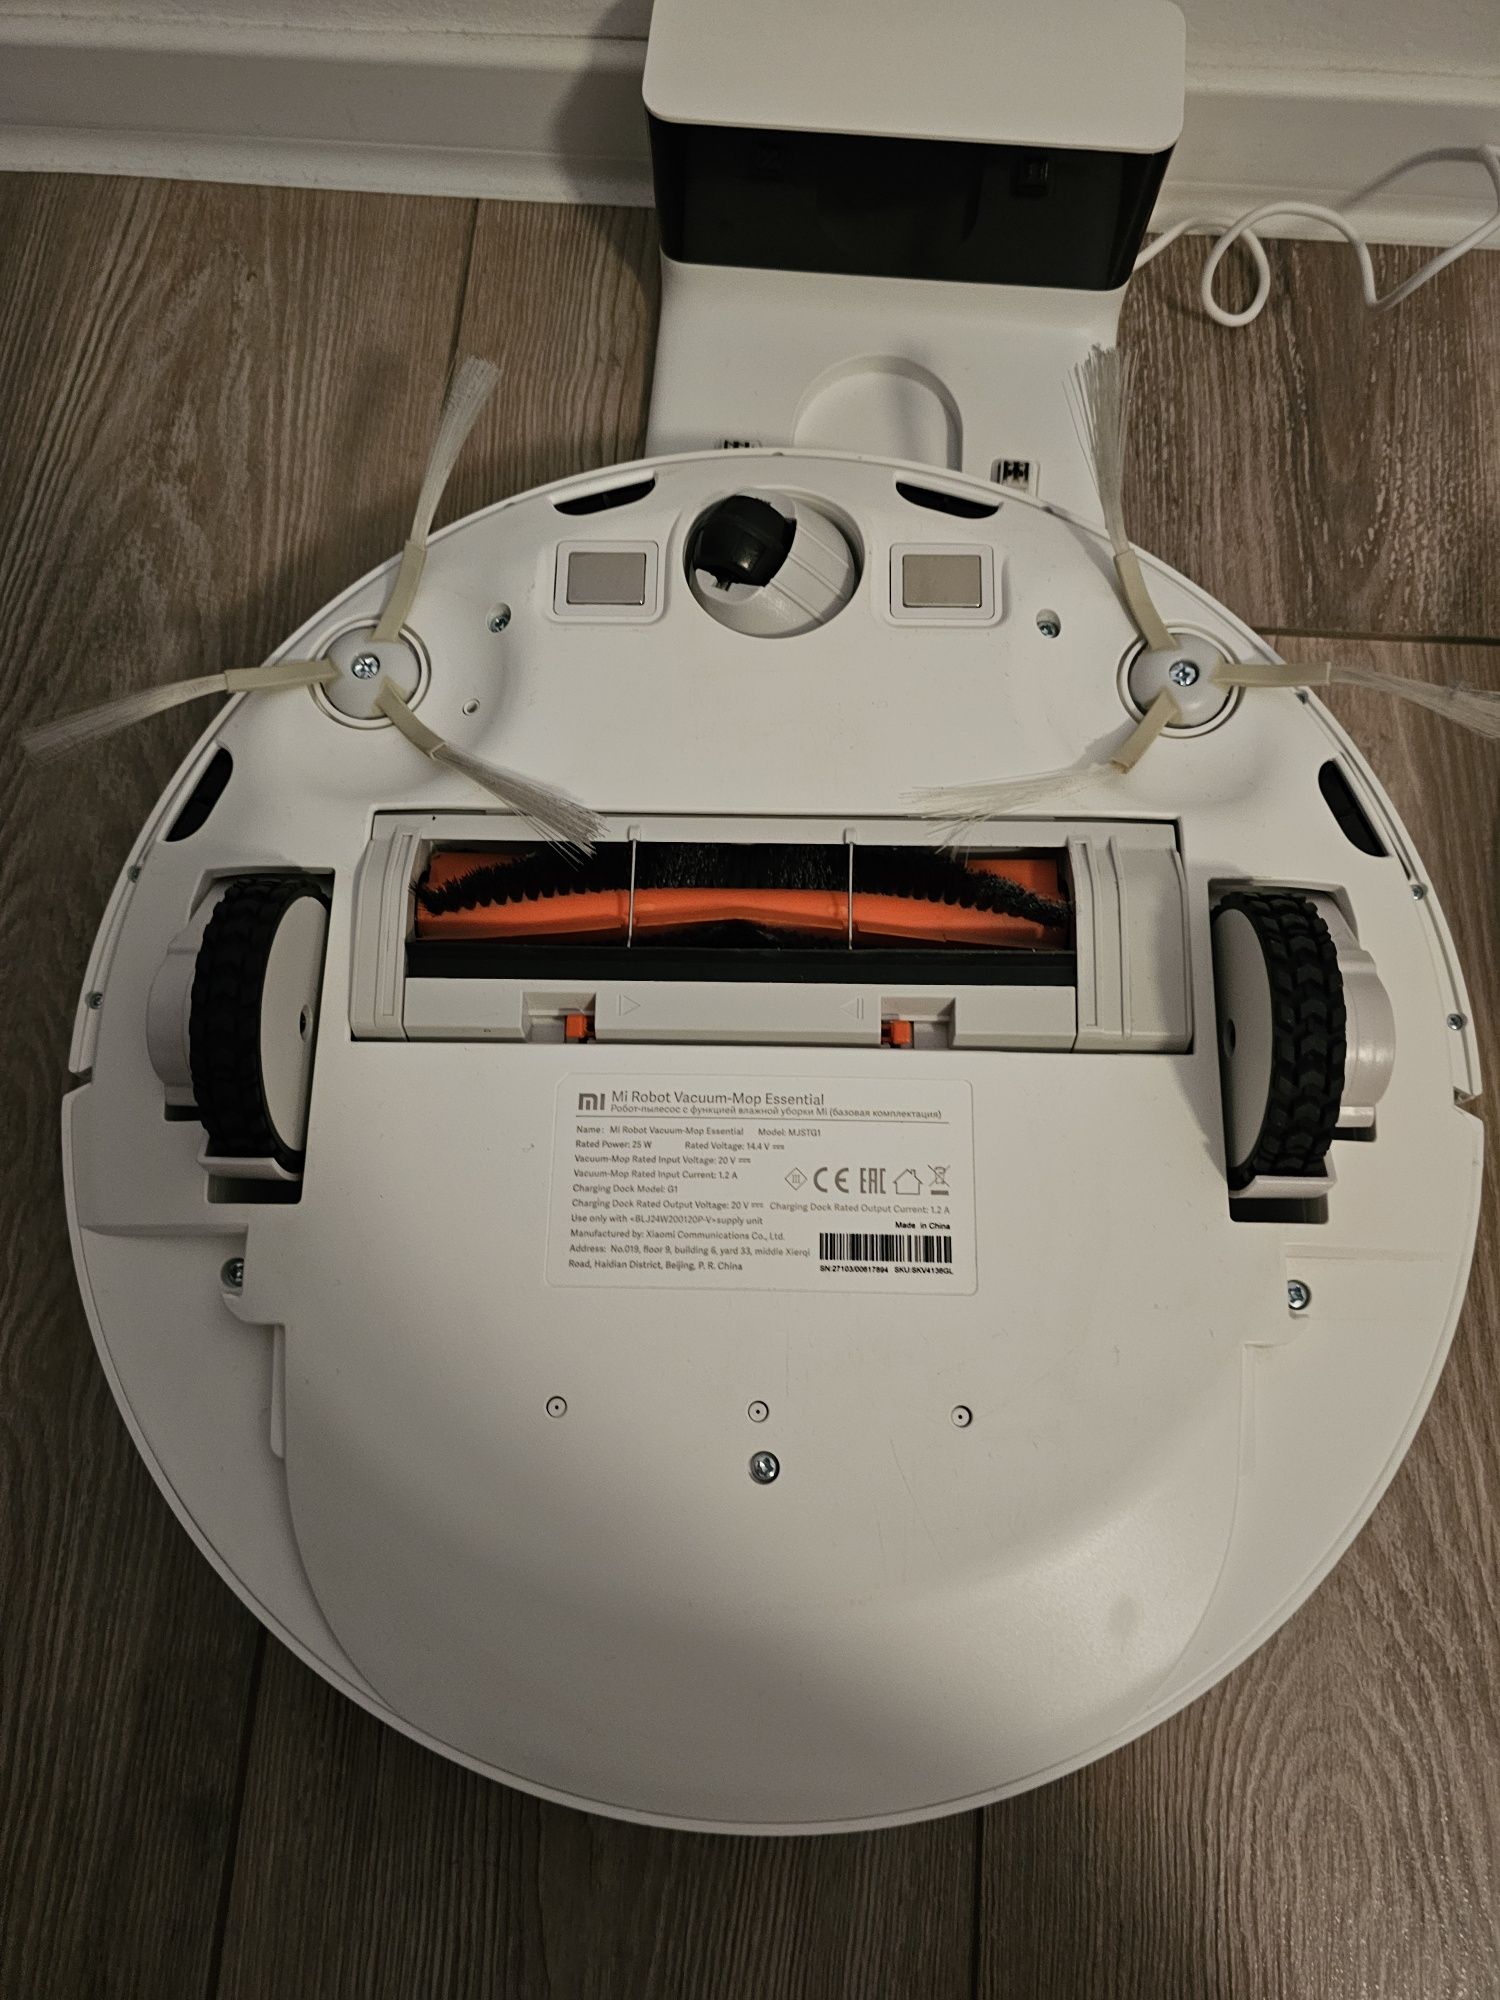 Xiaomi Mi Robot Vacuum-Mop Essential